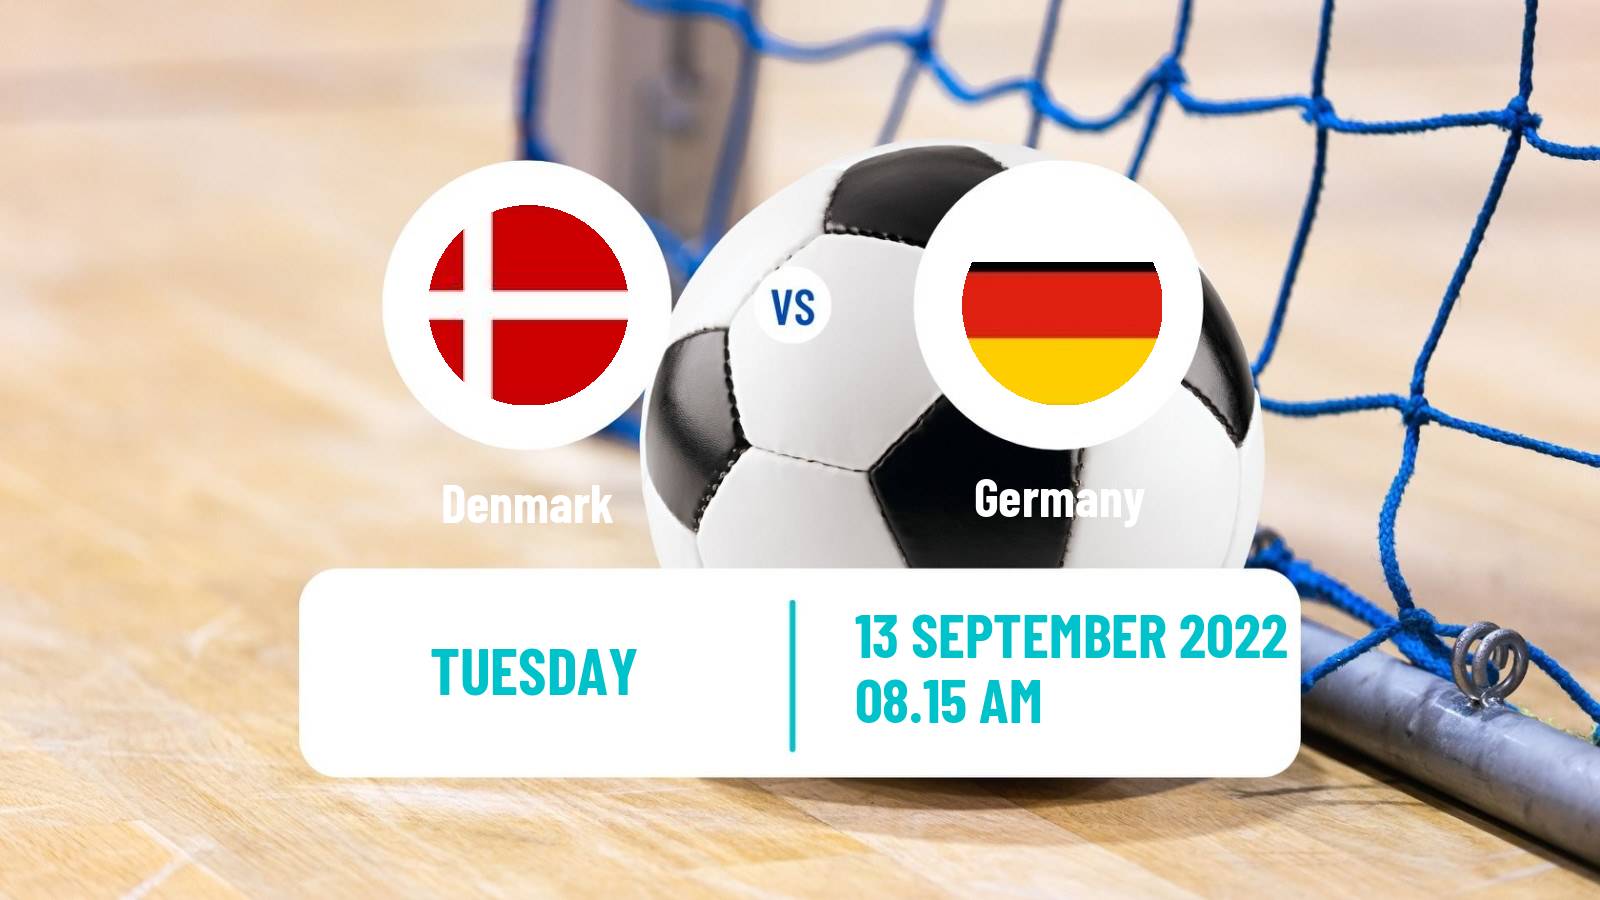 Futsal Friendly International Futsal Denmark - Germany